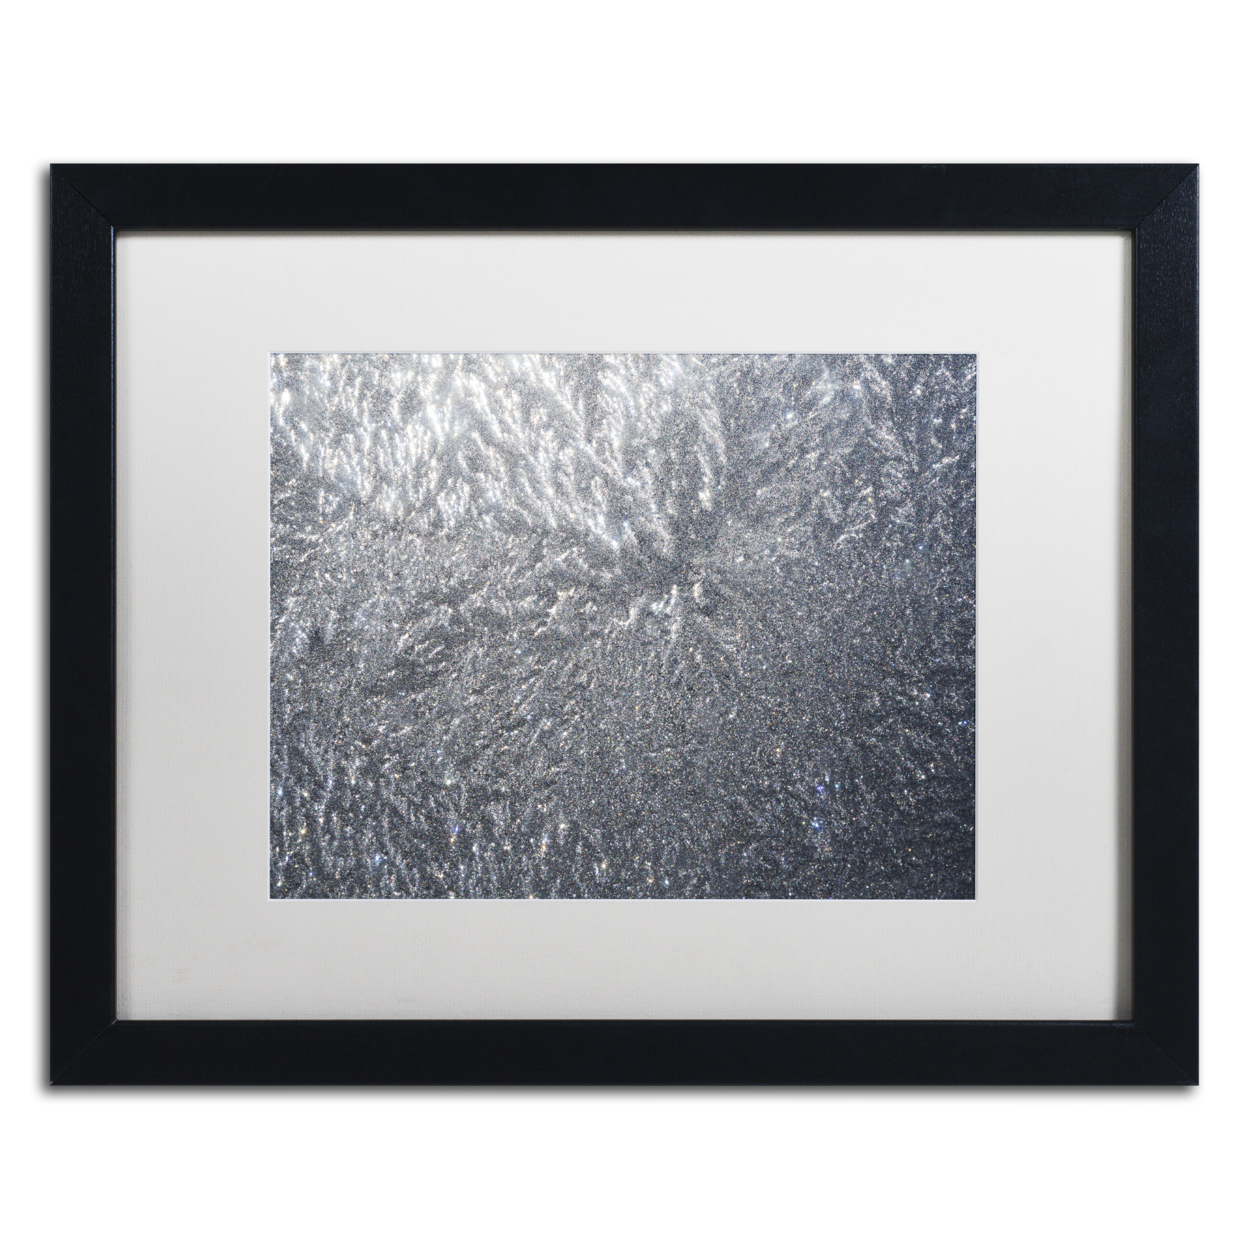 Kurt Shaffer 'Sunlight Frost Abstract' Black Wooden Framed Art 18 X 22 Inches